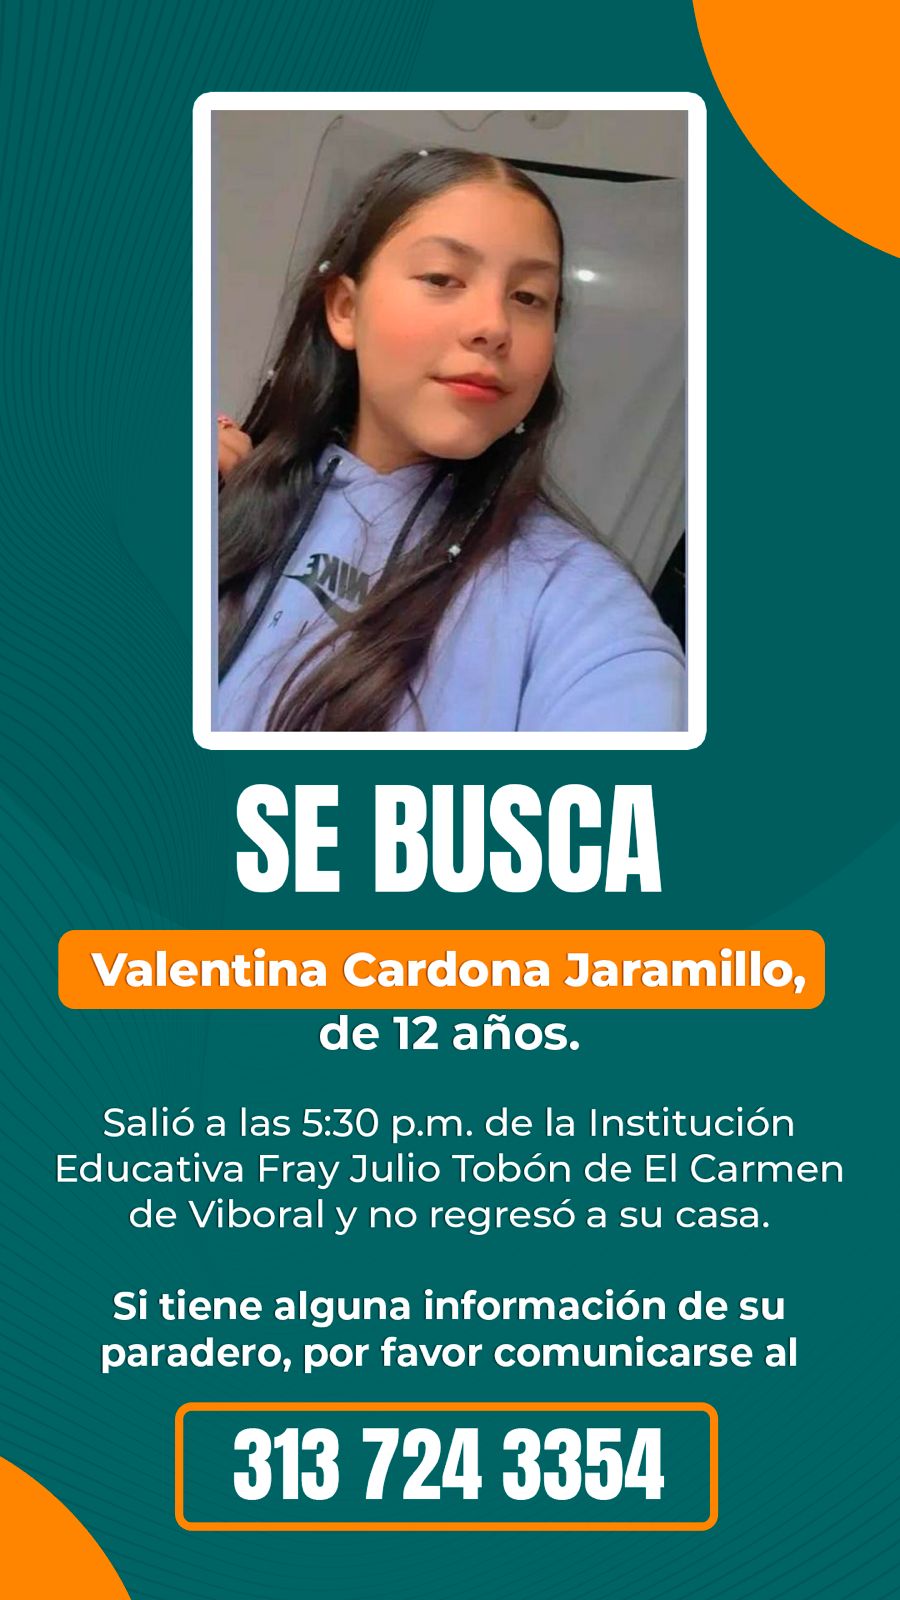 Buscan a menor de 12 años desaparecida desde ayer en El Carmen